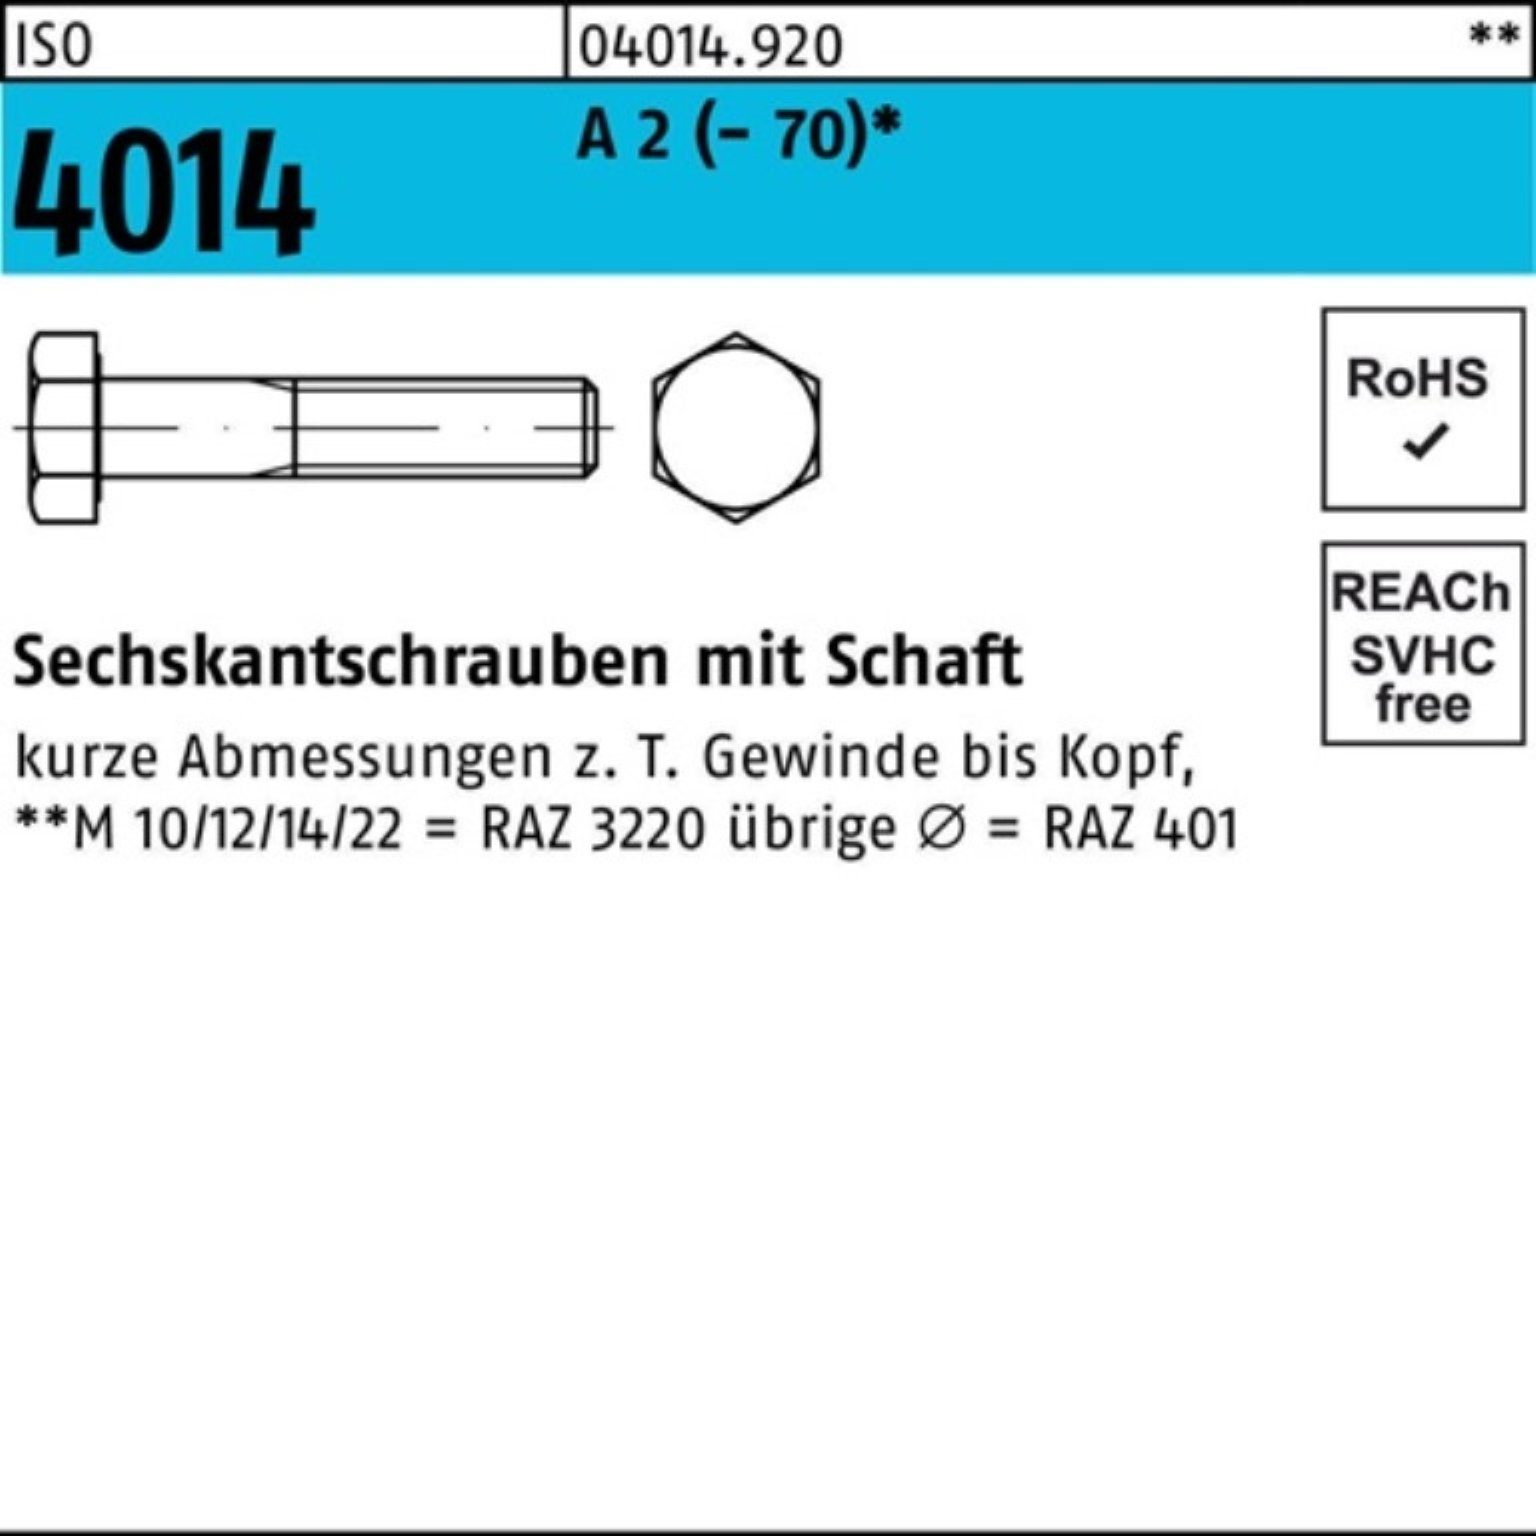 Bufab Sechskantschraube 100er Pack Sechskantschraube ISO 4014 Schaft M20x 220 A 2 (70) 1 St